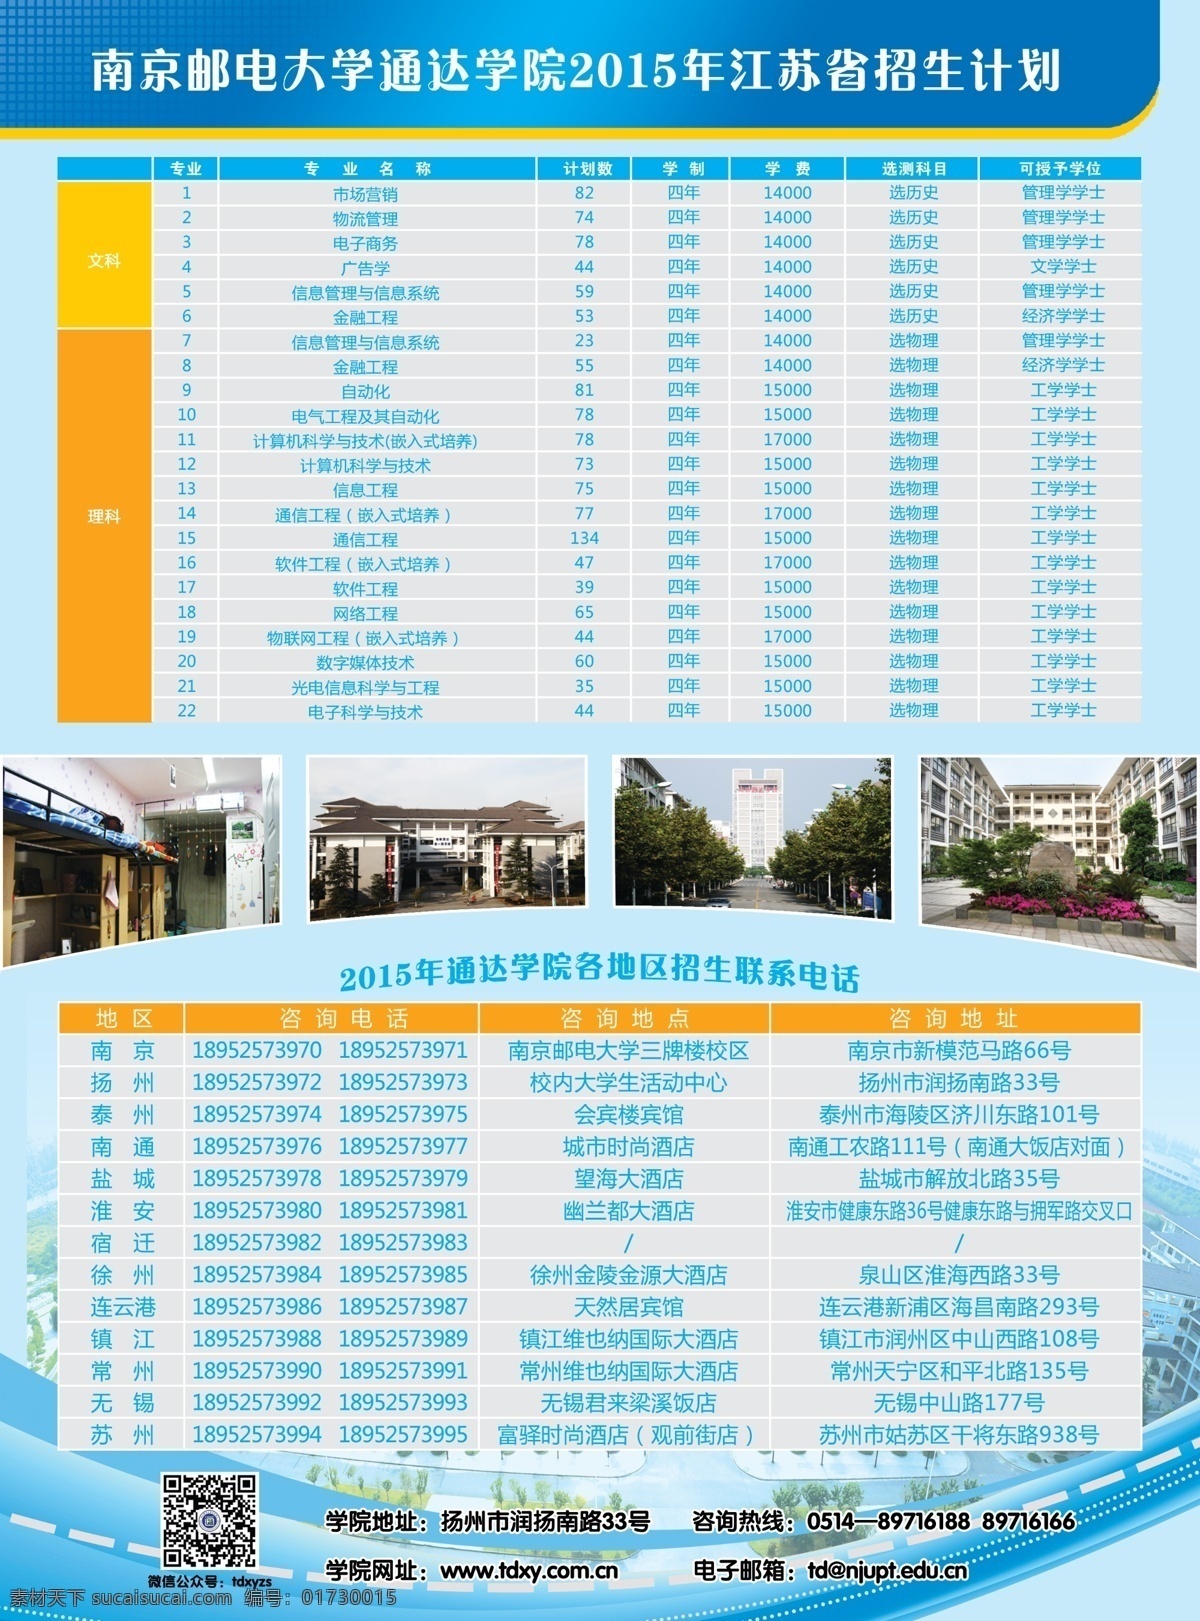 2015 招生简章 南京邮电大学 蓝色 校园 优势 简介 dm宣传单 青色 天蓝色